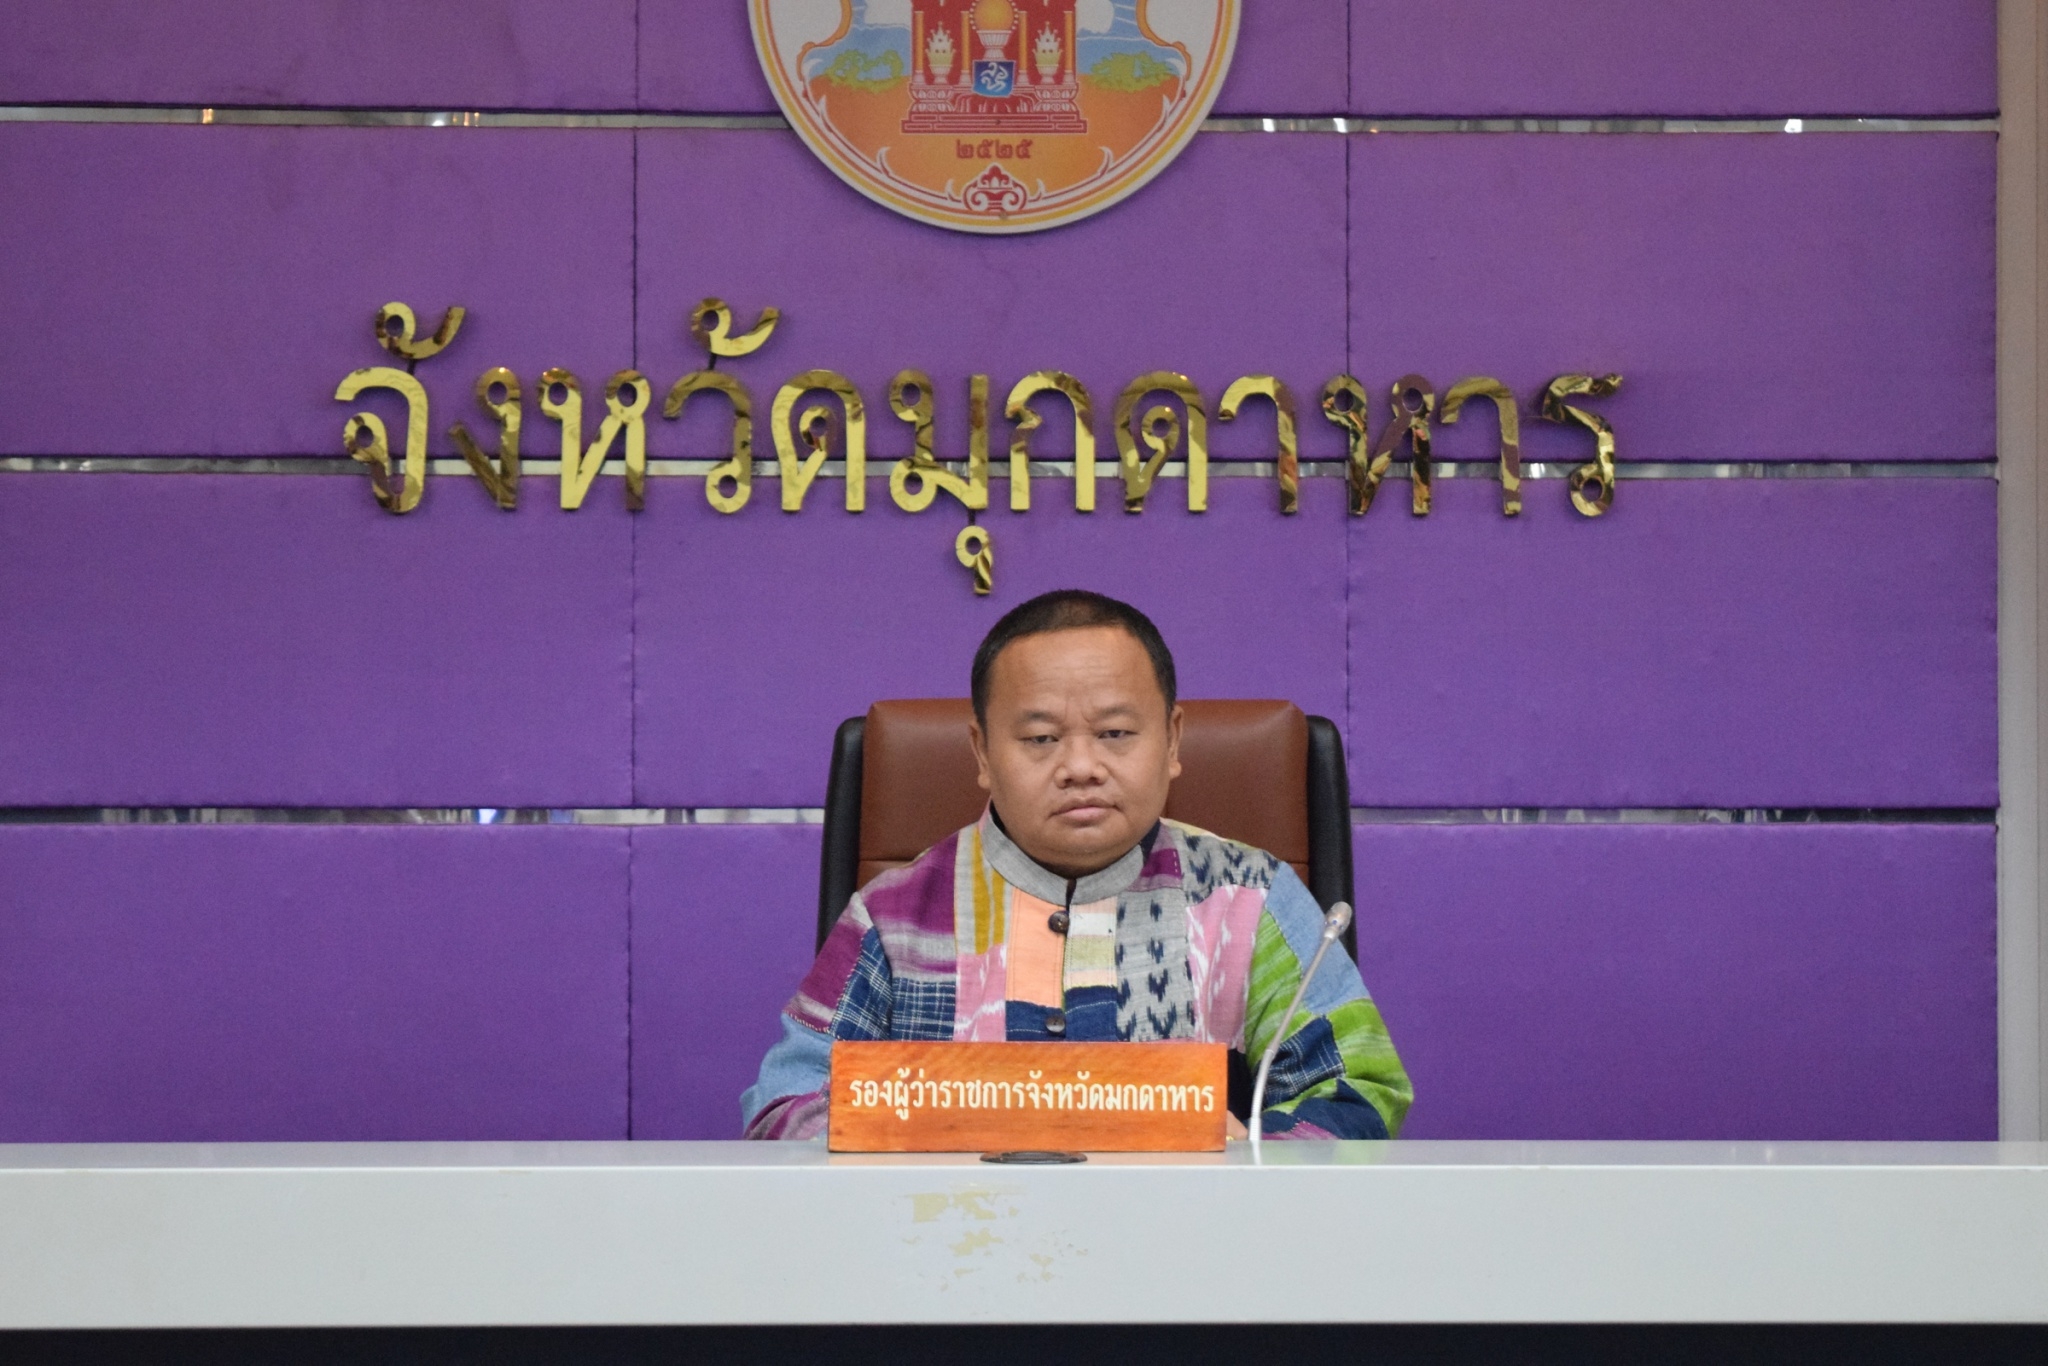 จังหวัดมุกดาหาร จัดประชุมชี้แจงเกี่ยวกับกฎหมายด้านการเงินการคลังและการปฏิบัติงานในระบบ New GFMIS Thai ให้แก่เจ้าหน้าที่ส่วนราชการประจำจังหวัดมุกดาหาร